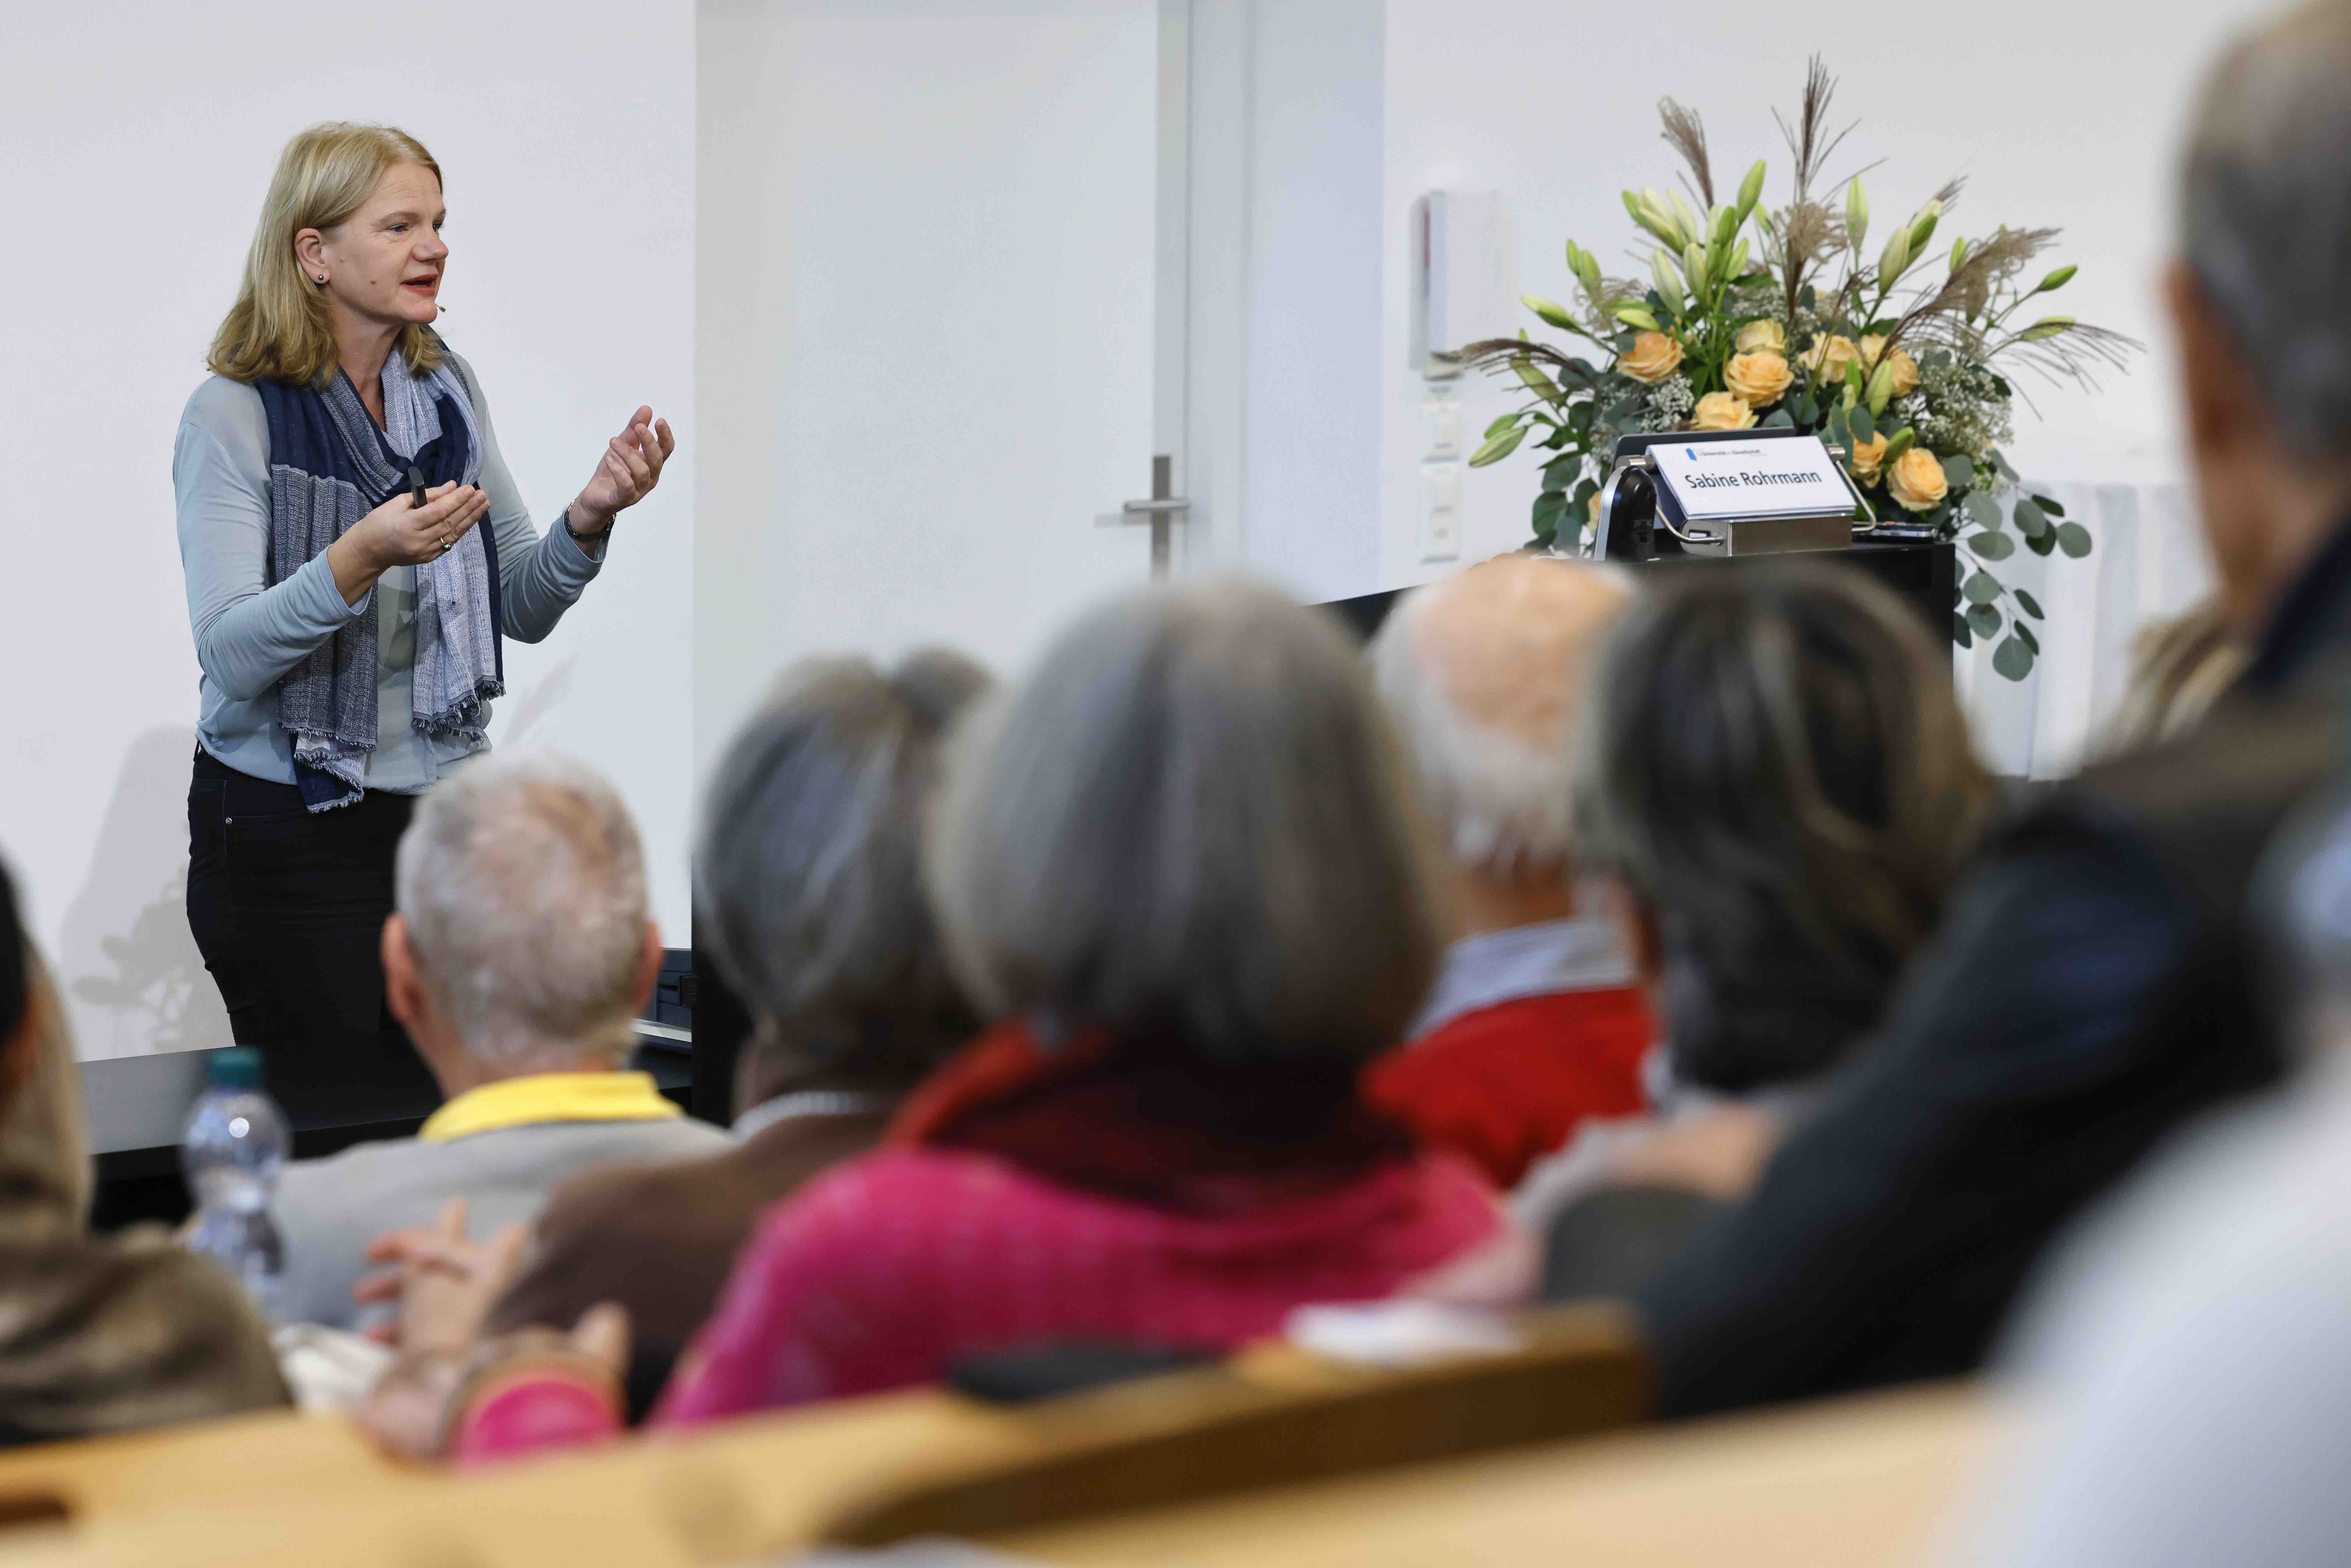 Links im Bild steht die Referentin Sabine Rohrmann und gestikuliert mit beiden Händen. Rechts im Bild ist ein Blumenstrauss und im Vordergrund ein Teil des Publikums zu sehen.